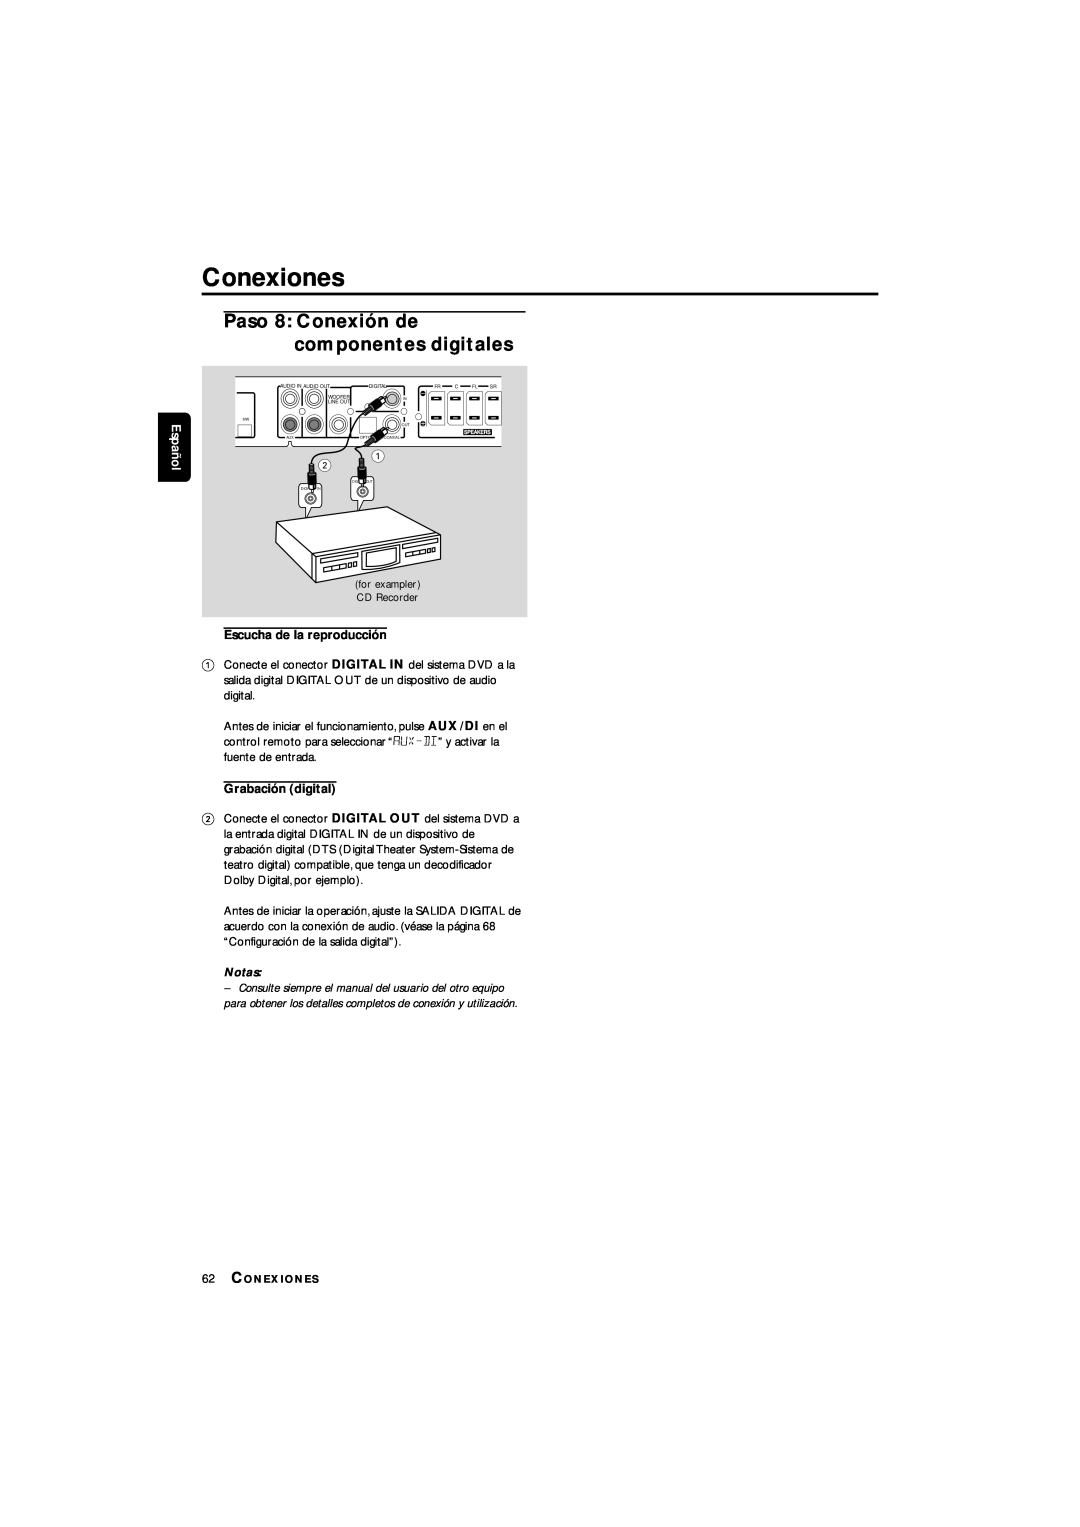 Philips LX3700D manual Conexiones, Paso 8 Conexión de componentes digitales, Escucha de la reproducción, Grabación digital 